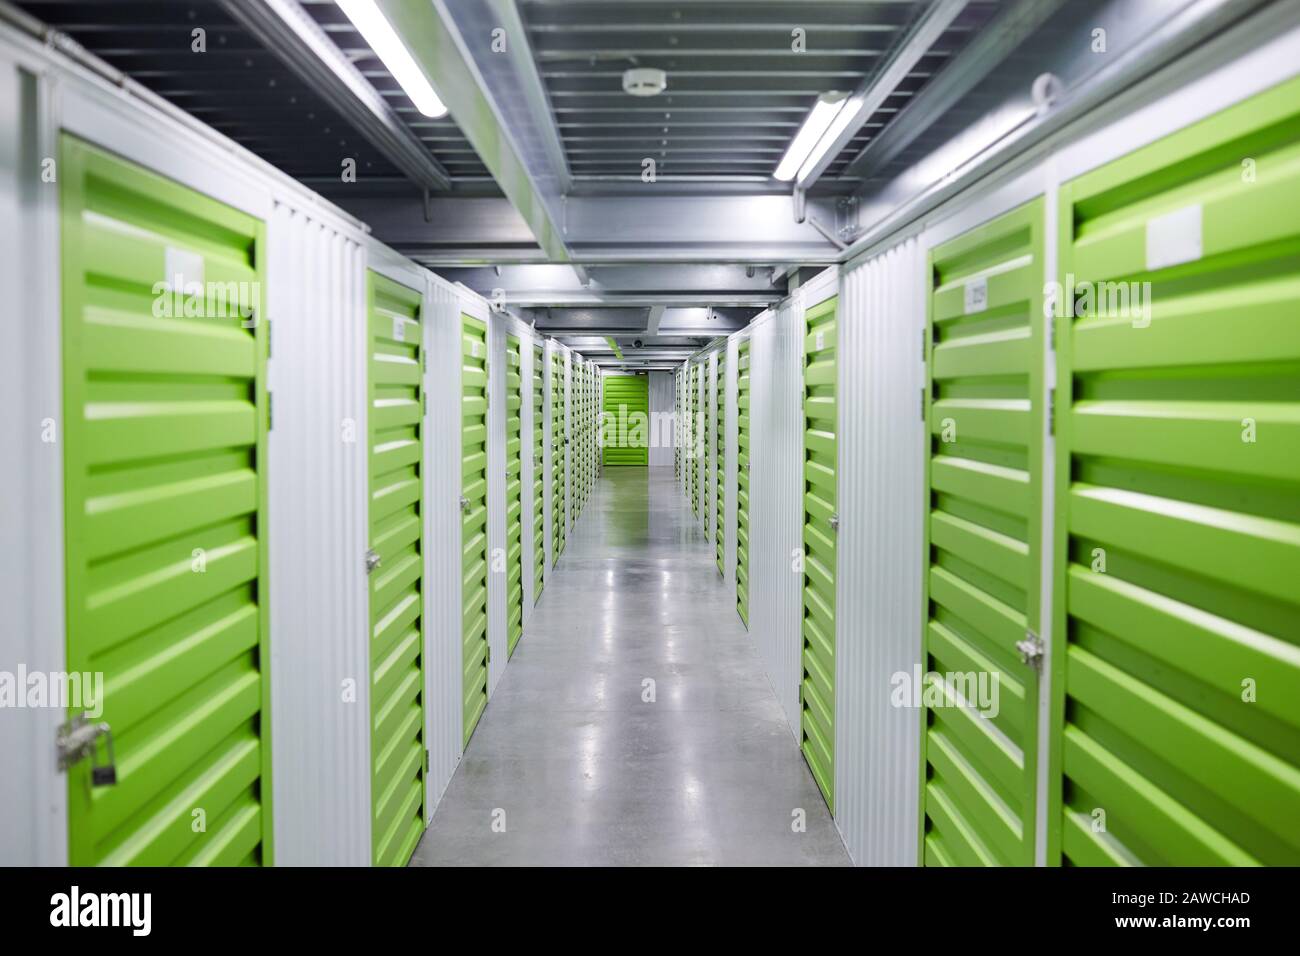 Illustration du couloir vide de la salle de stockage avec boîtes de rangement vertes Banque D'Images